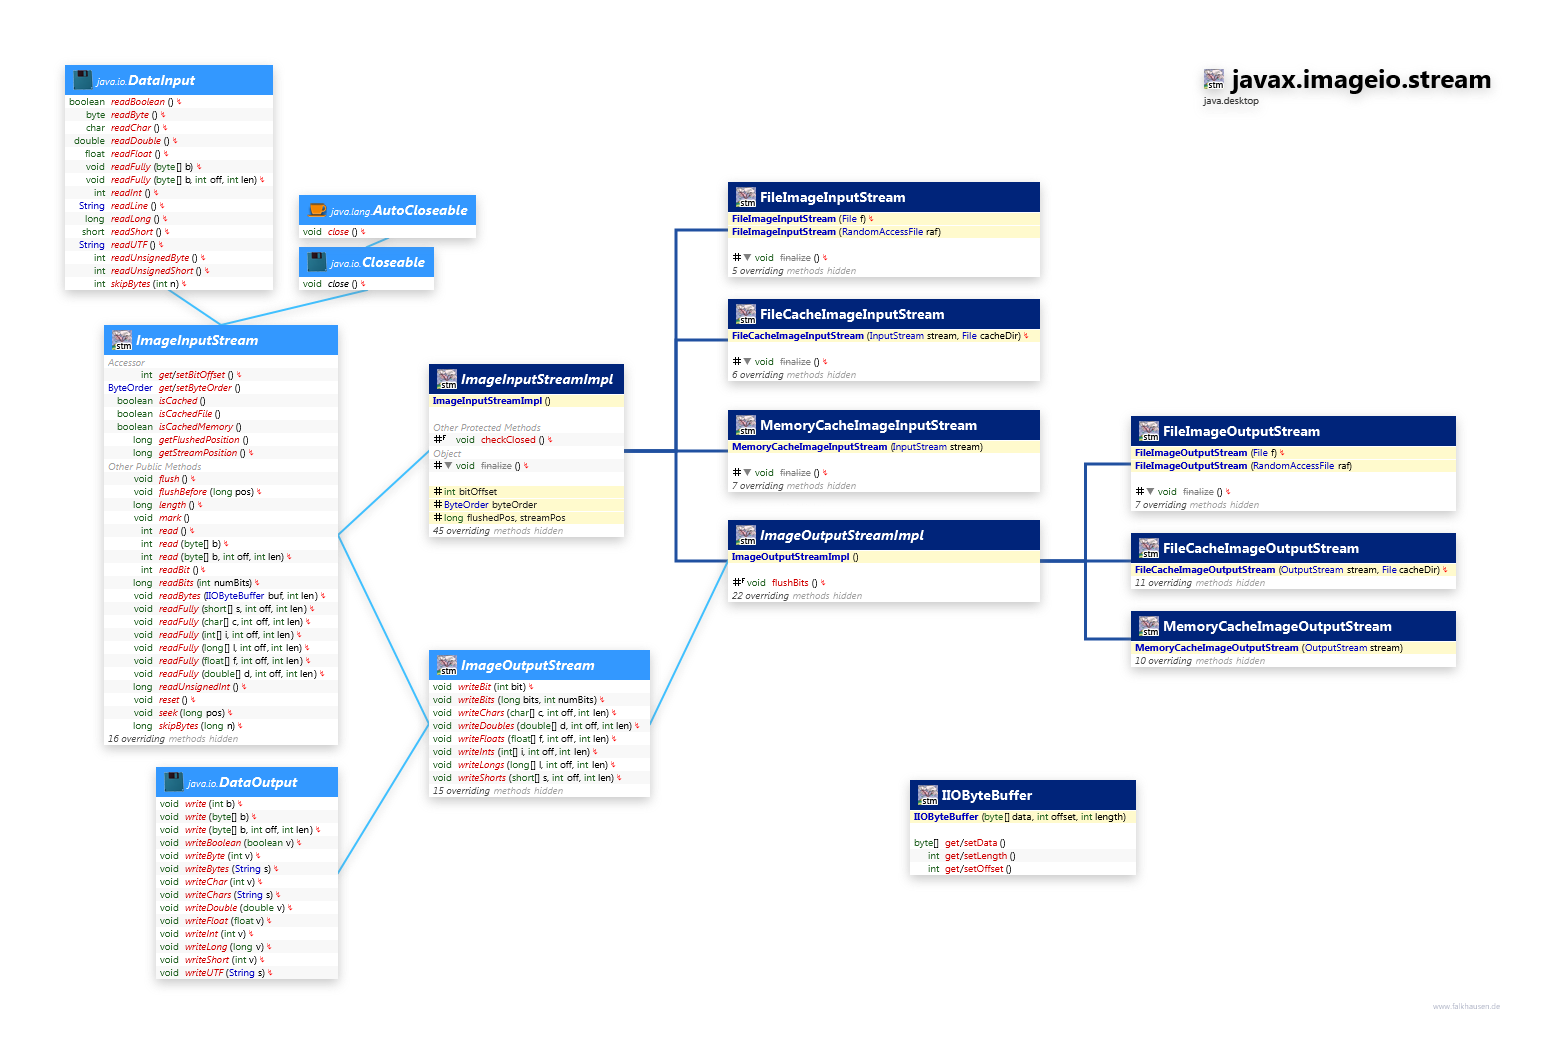 javax.imageio.stream class diagram and api documentation for Java 10